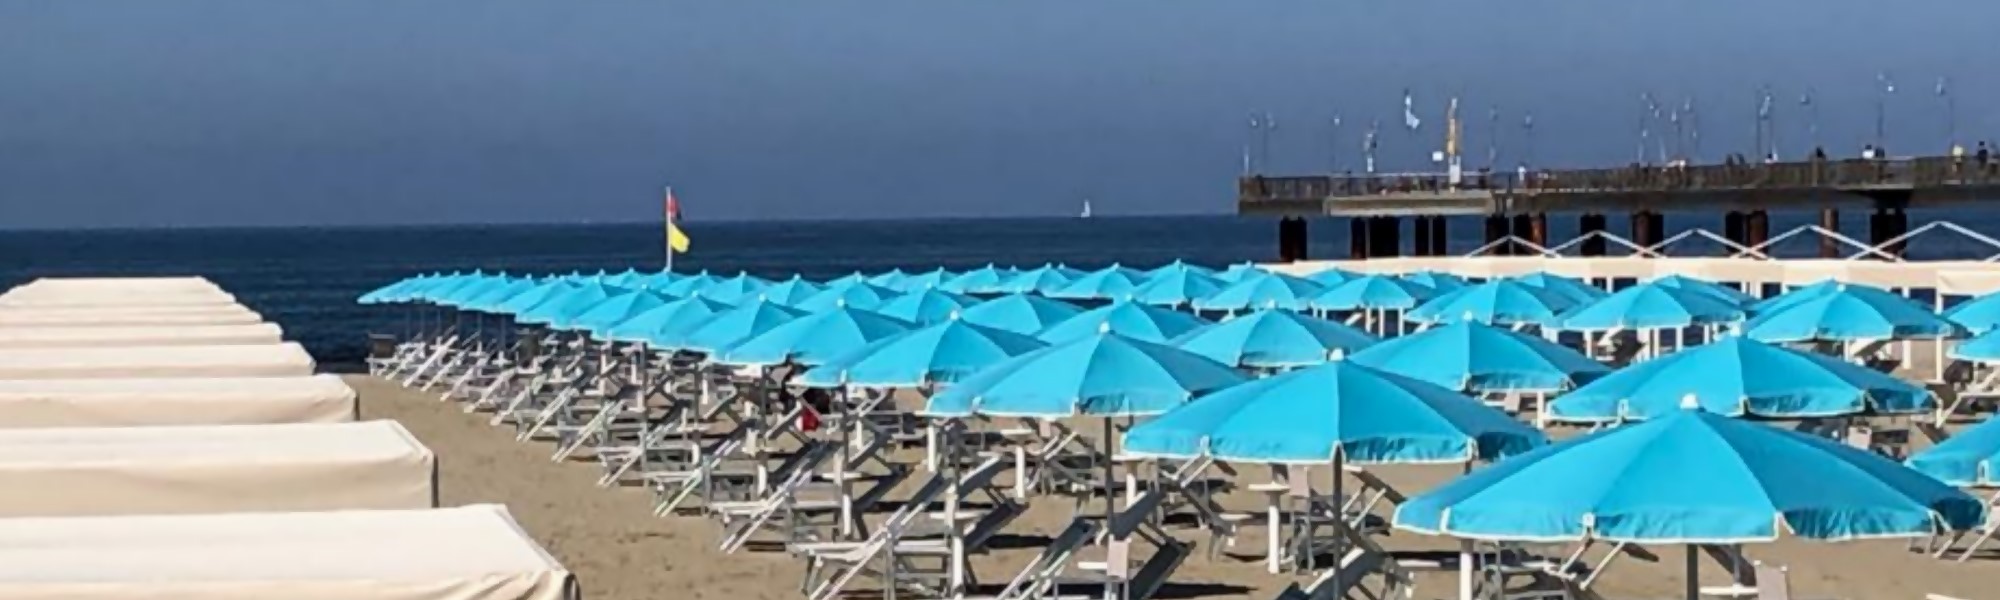 Conchiglia Beach Stabilimento Balneare a Marina di Pietrasanta